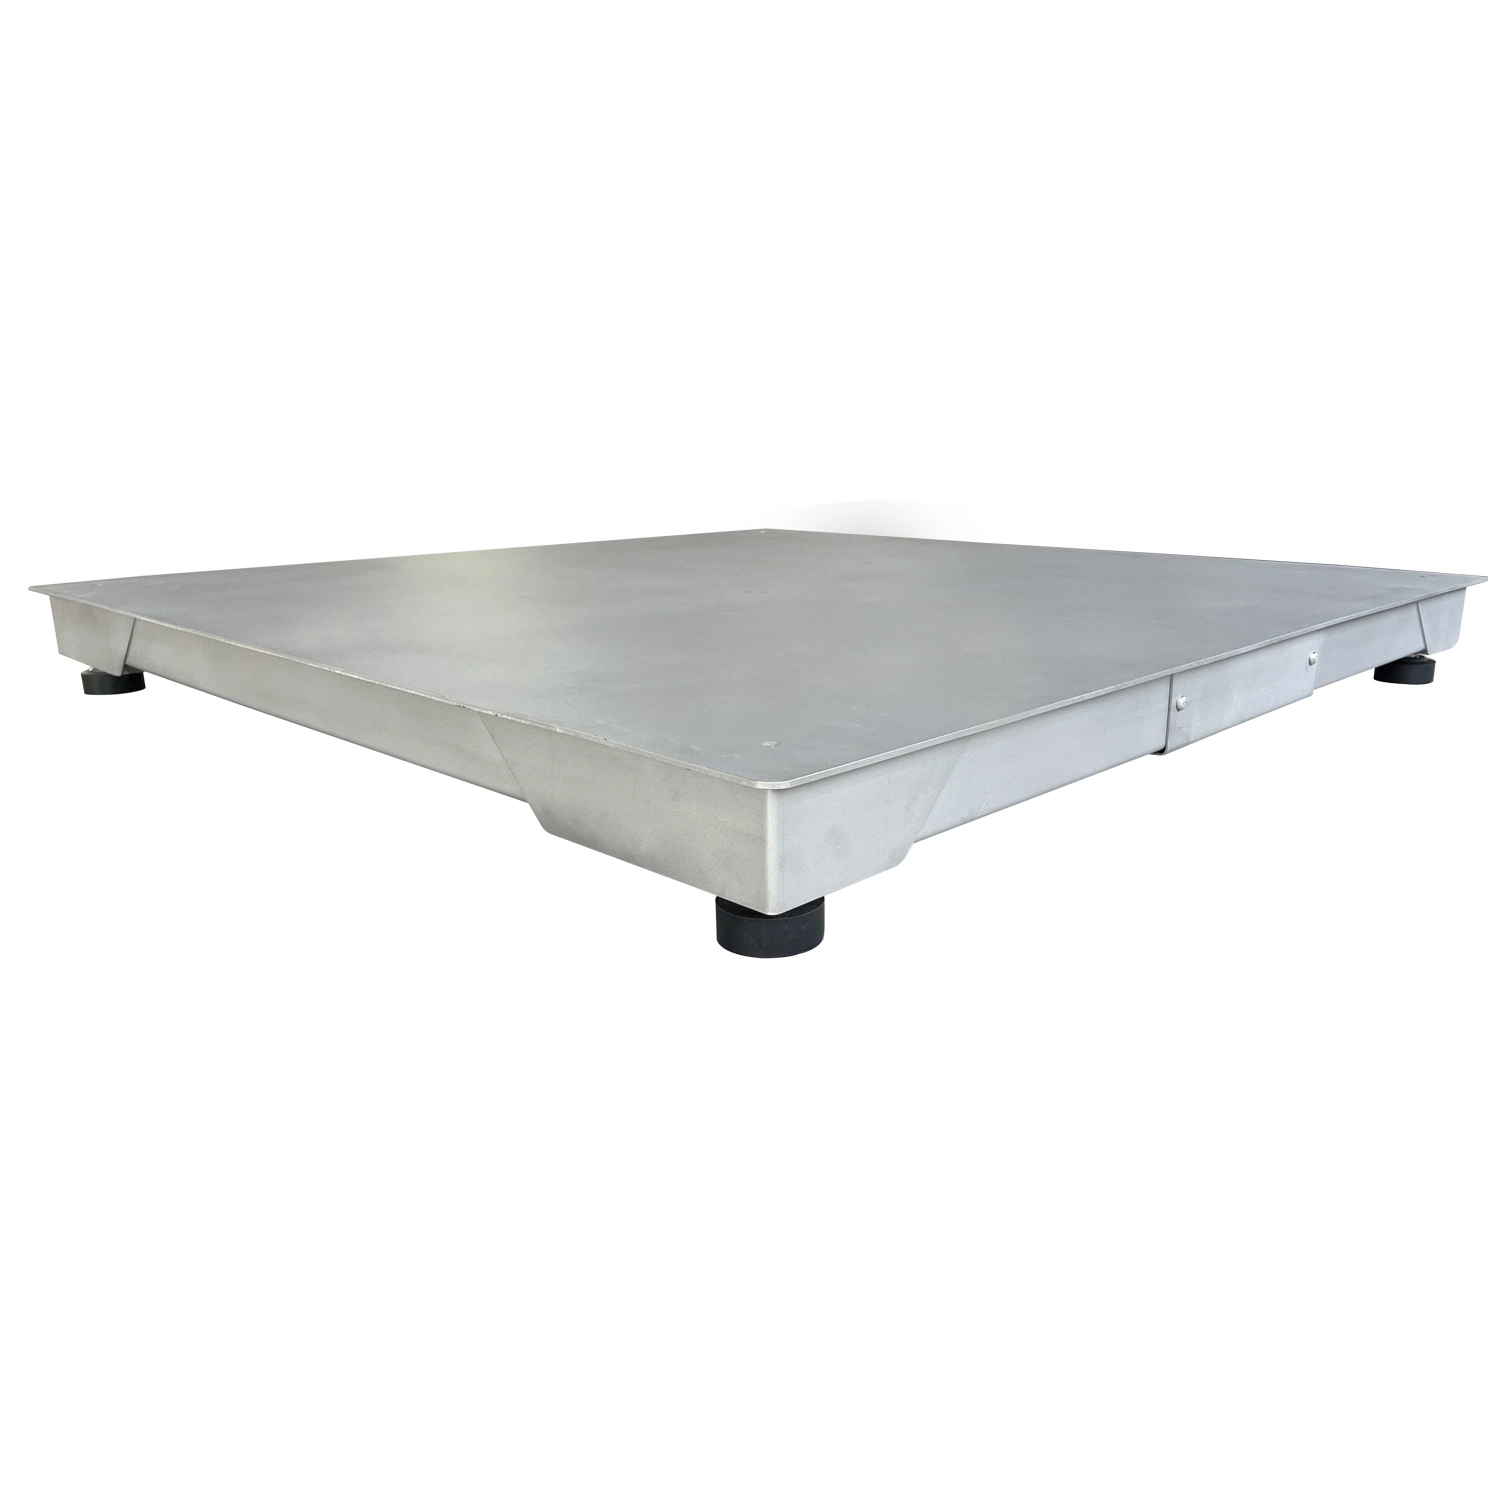 Plancher en acier inoxydable avec précision balance de pesage avec la certification NTEP